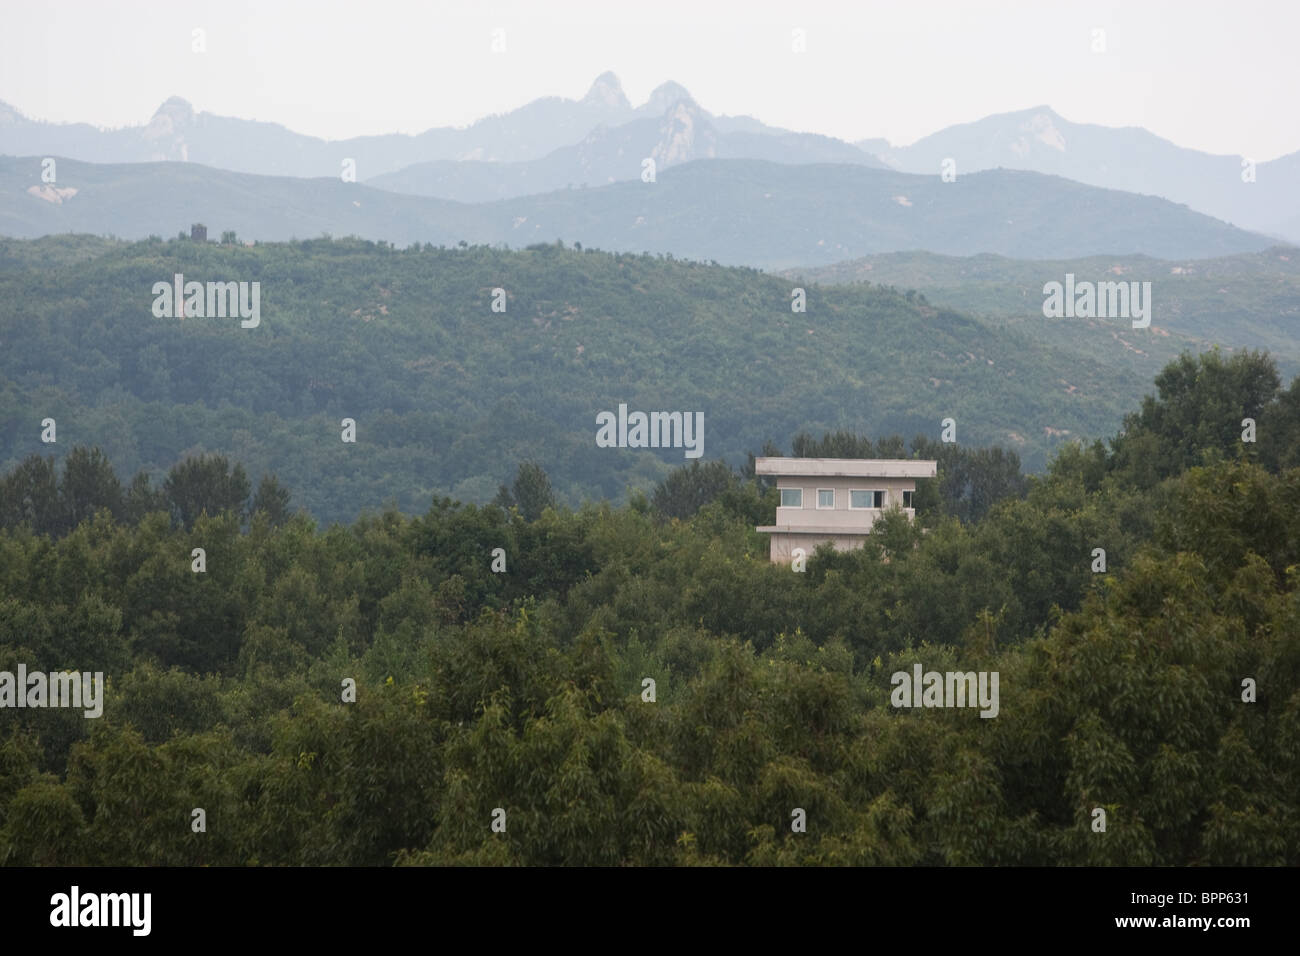 Atalaya de Corea del Norte en la zona desmilitarizada (DMZ) entre Corea del Norte y Corea del Sur. Foto de stock